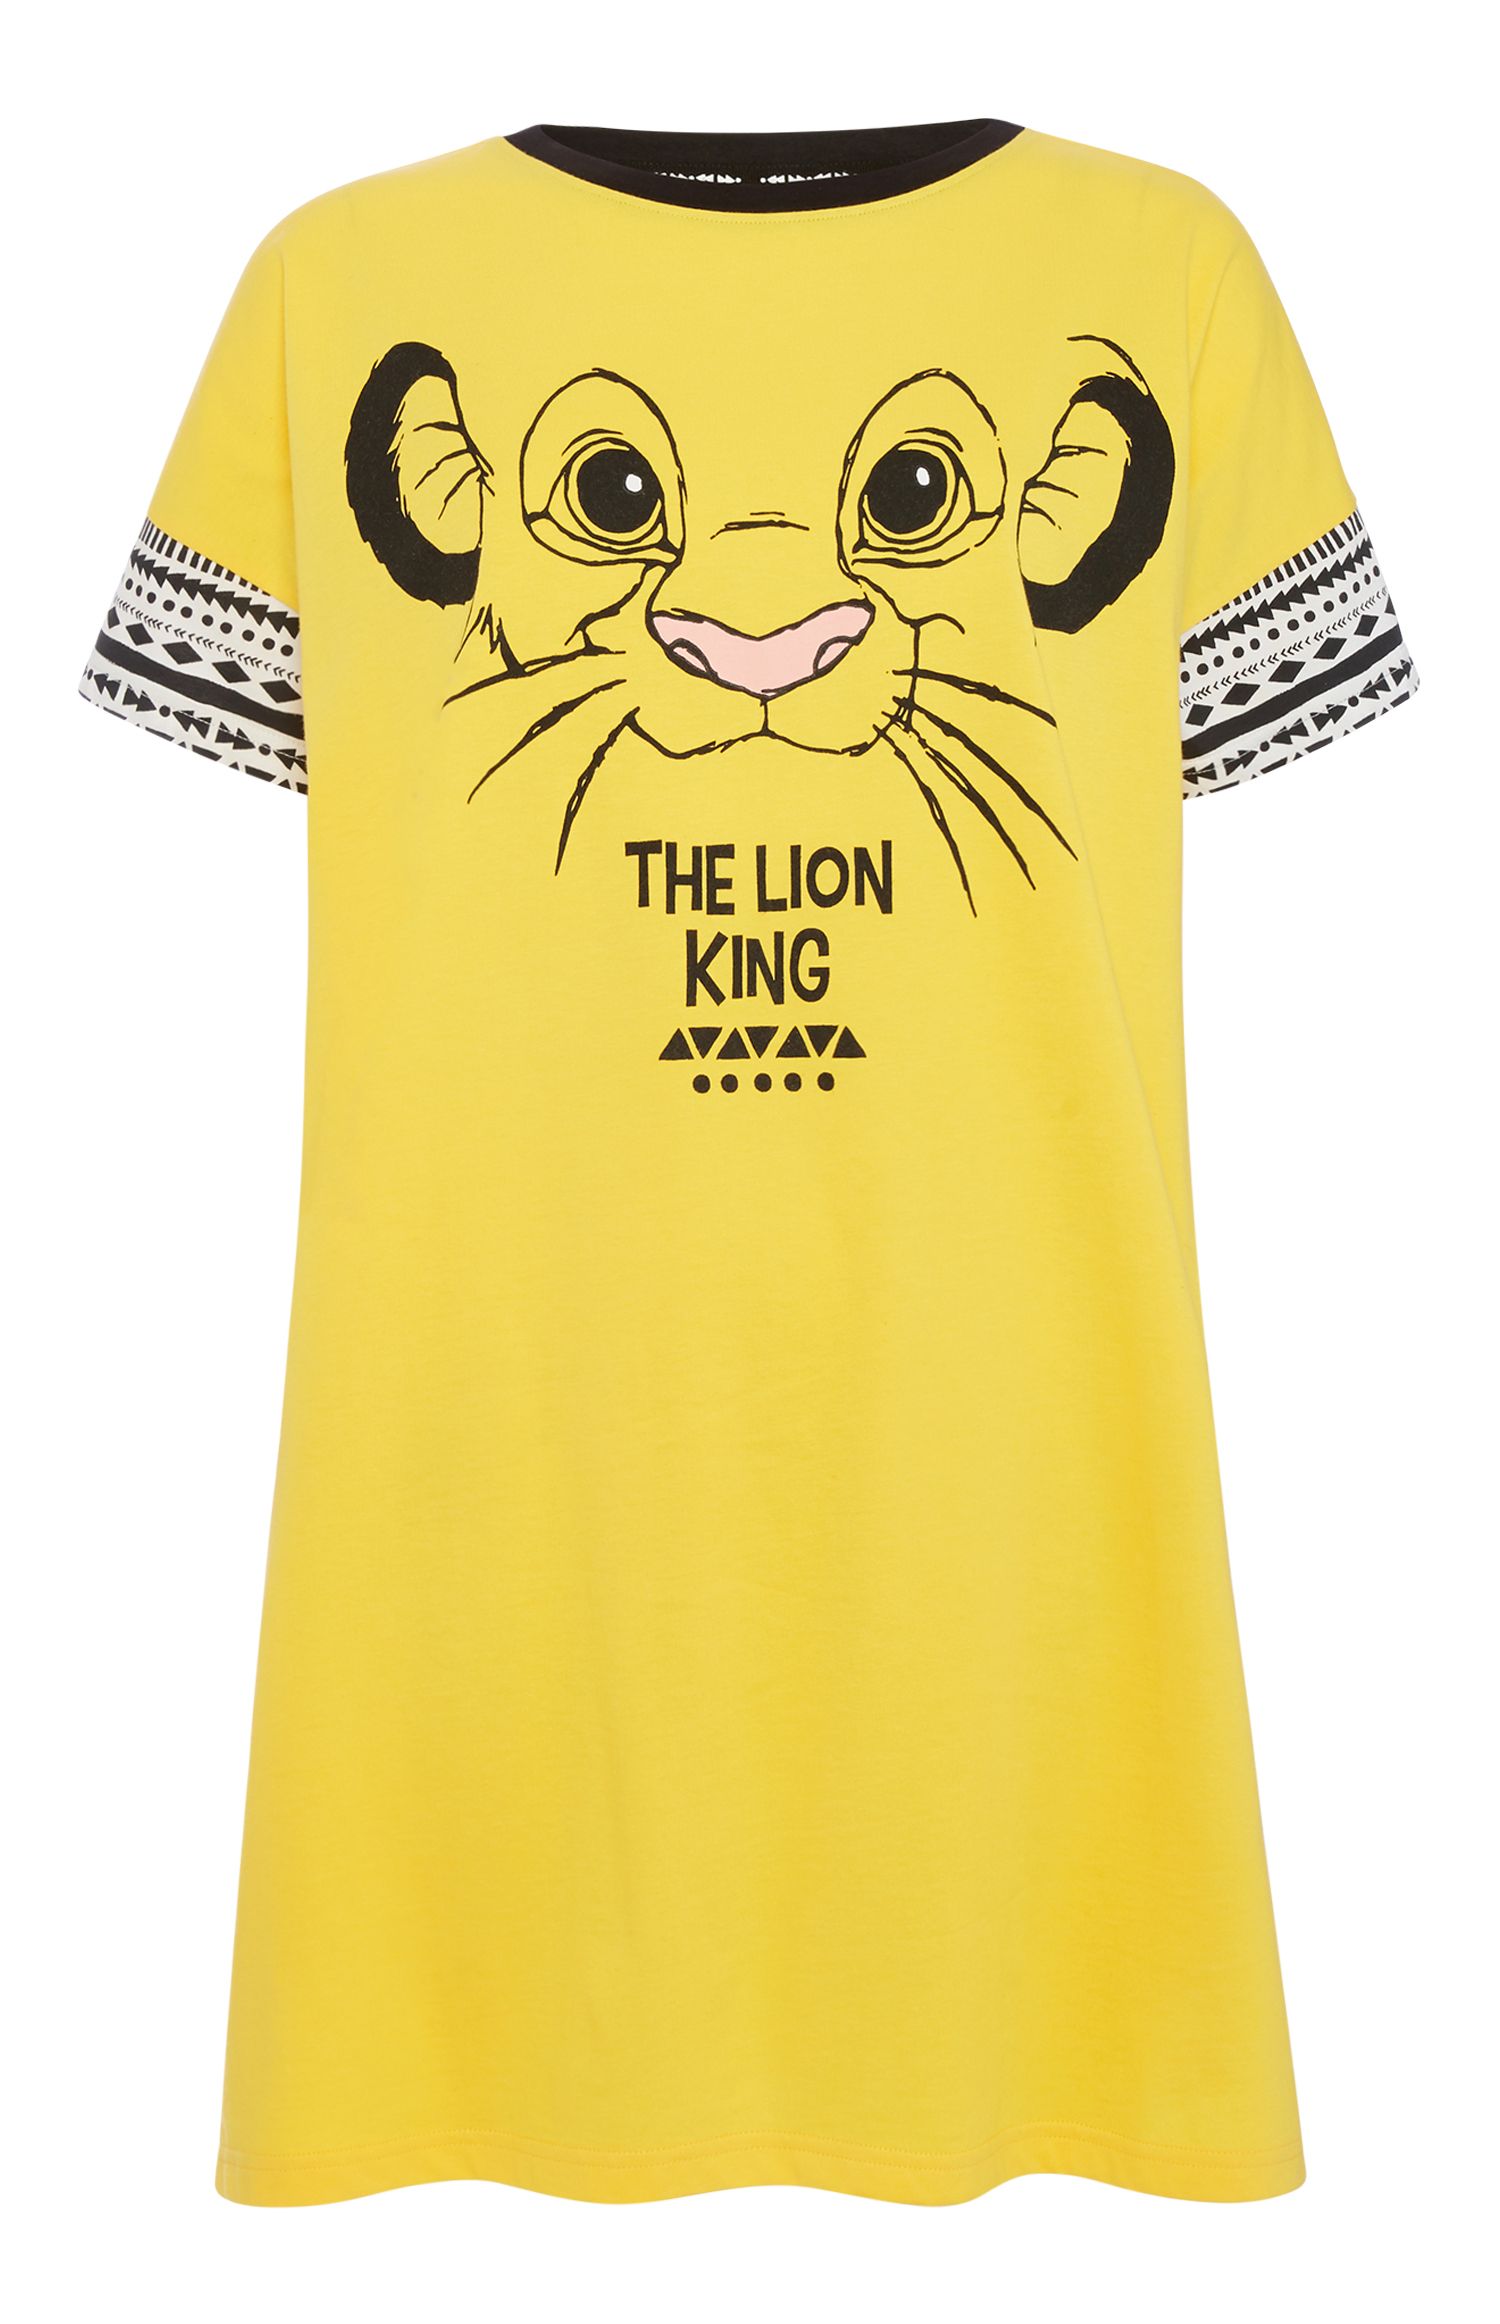 Primark lanza mejor camiseta 'El Rey León'